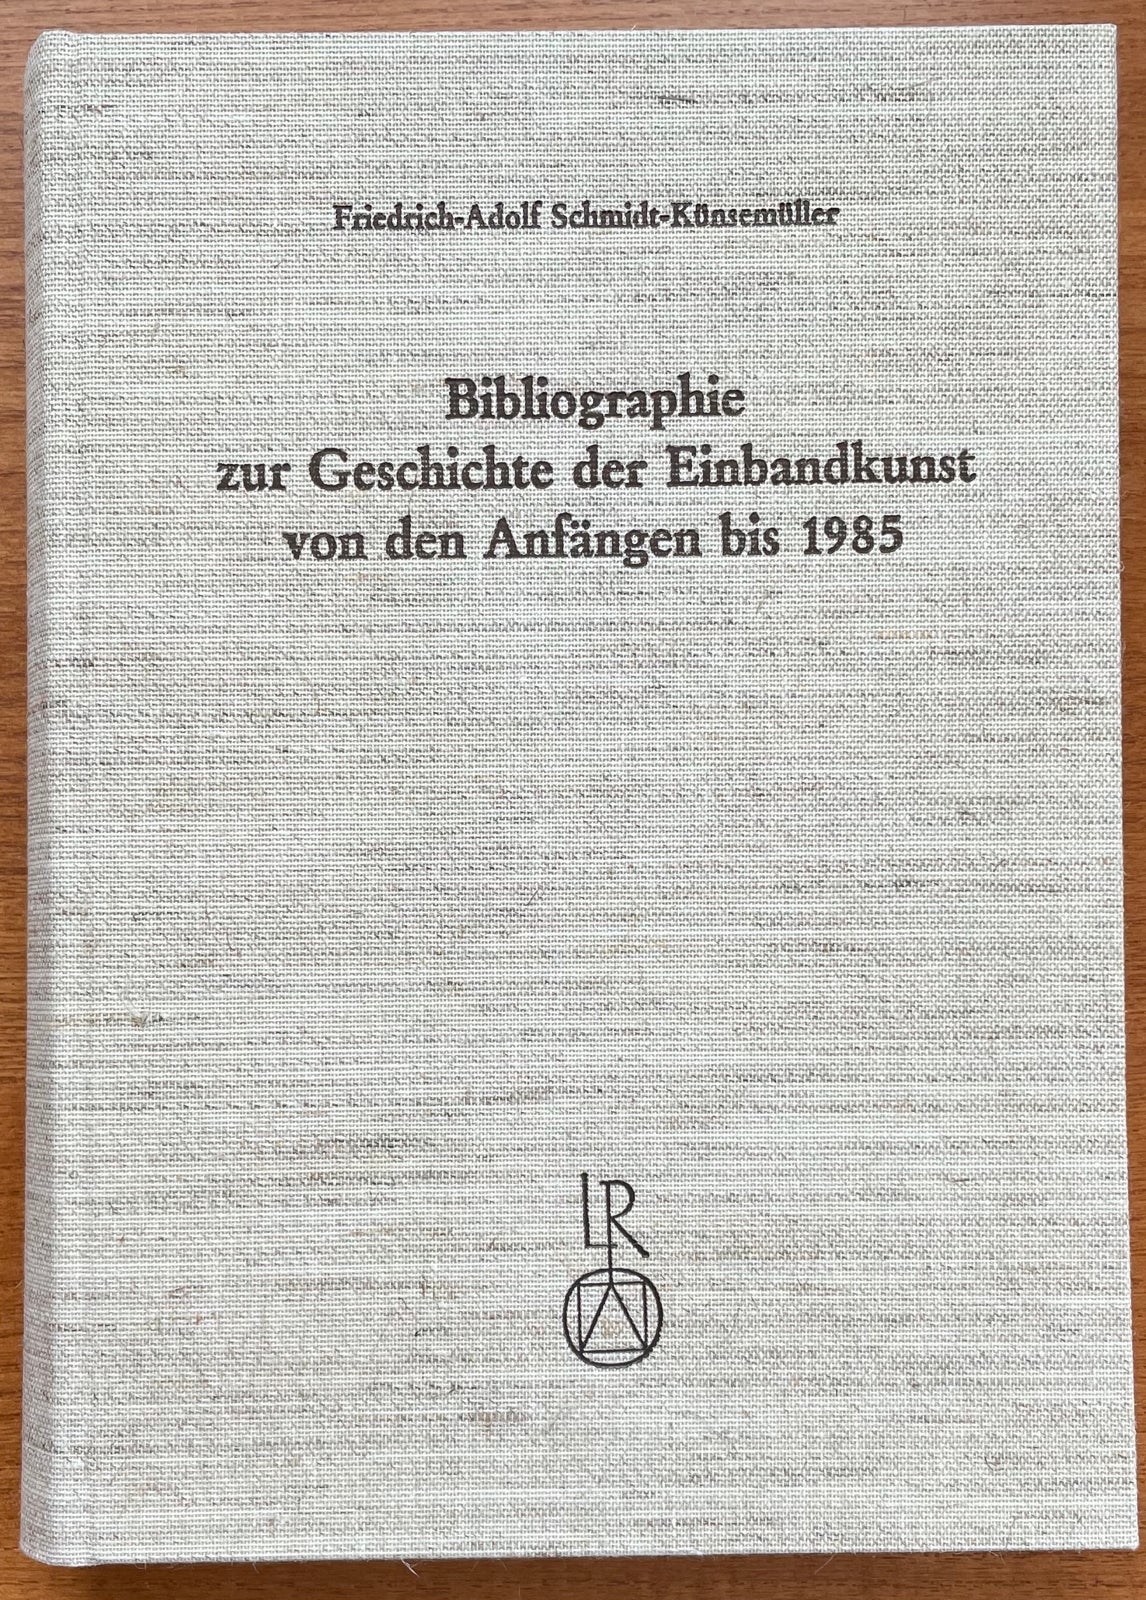 Item #12526 Bibliographie zur Geschichte der Einbandkunst von den Anfängen bis 1985....